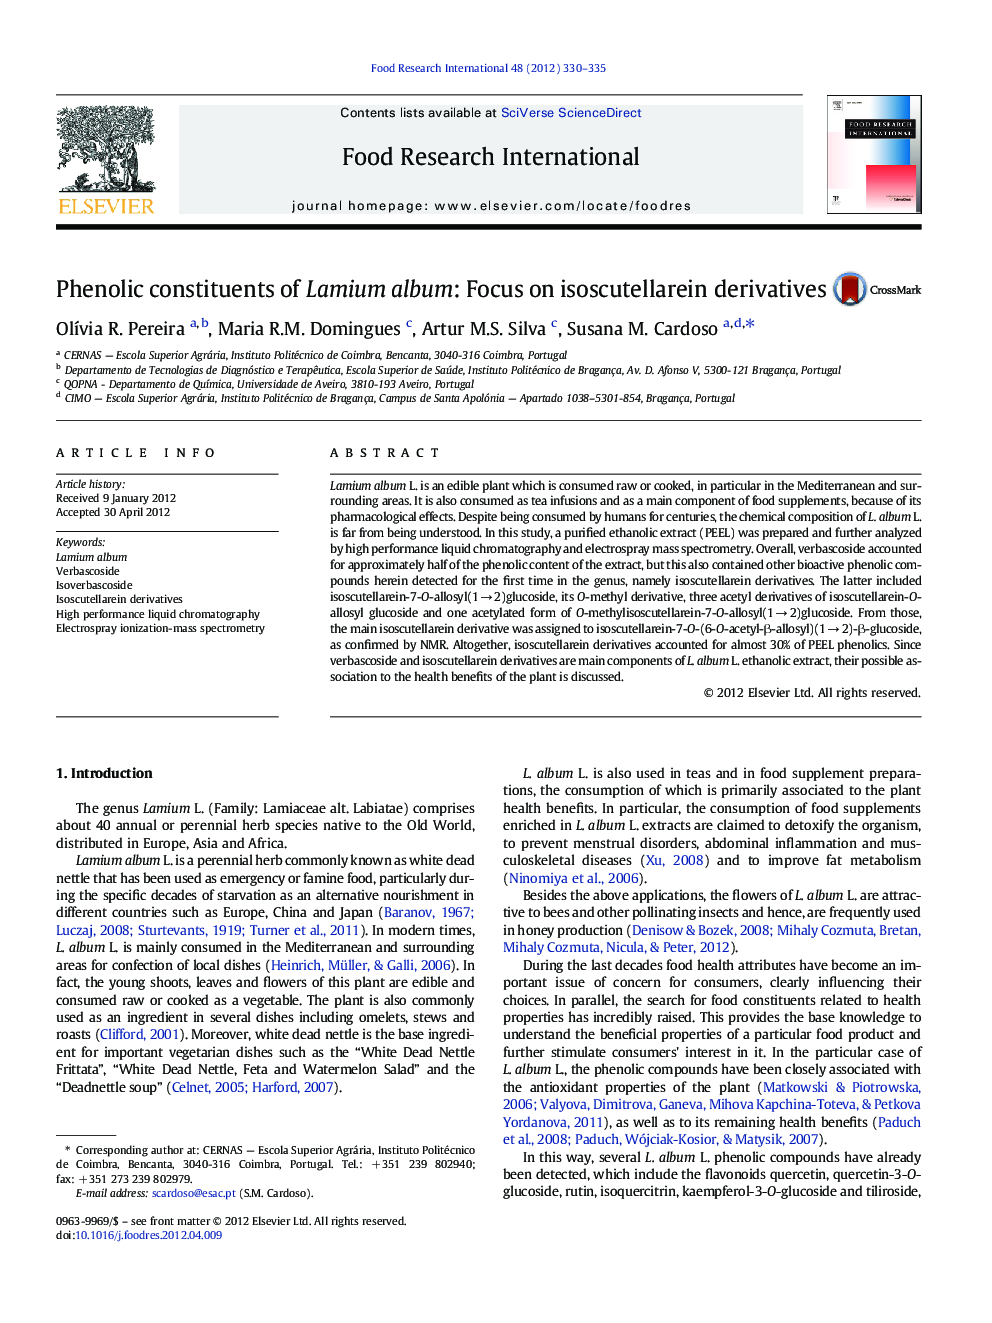 Phenolic constituents of Lamium album: Focus on isoscutellarein derivatives